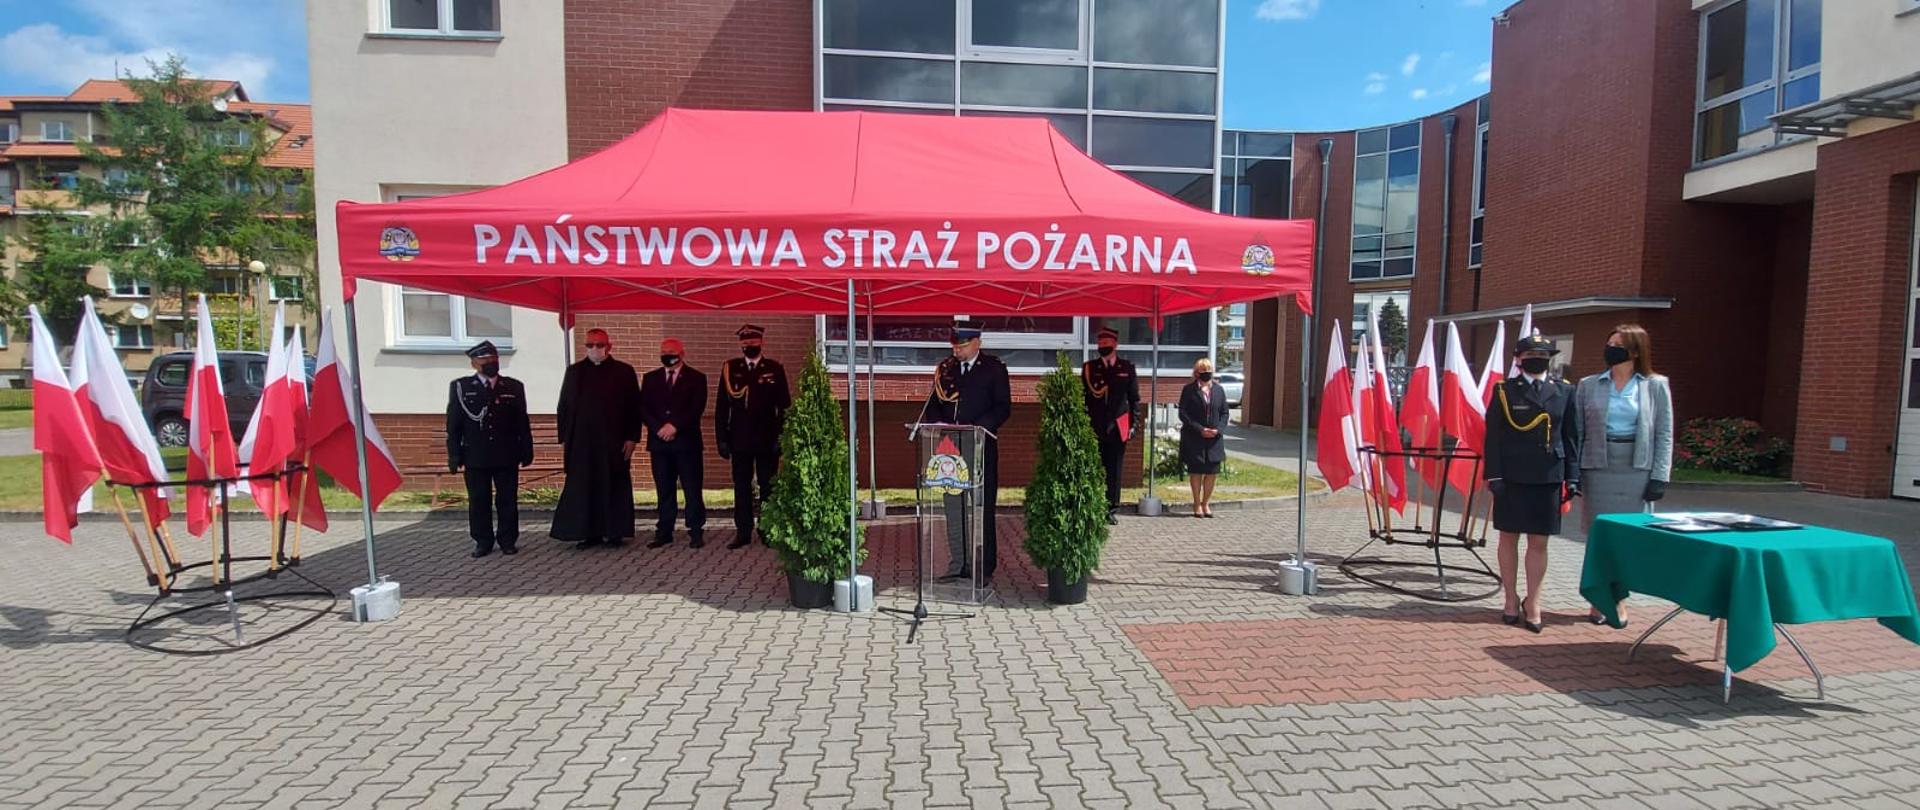 Zdjęcie przedstawia Strażaków oraz Gości stojących pod namiotem w czasie obchodów dnia strażaka. Po obu stronach namiotu postawione są stojaki z flagami Polski.w tle widać budynek komendy.